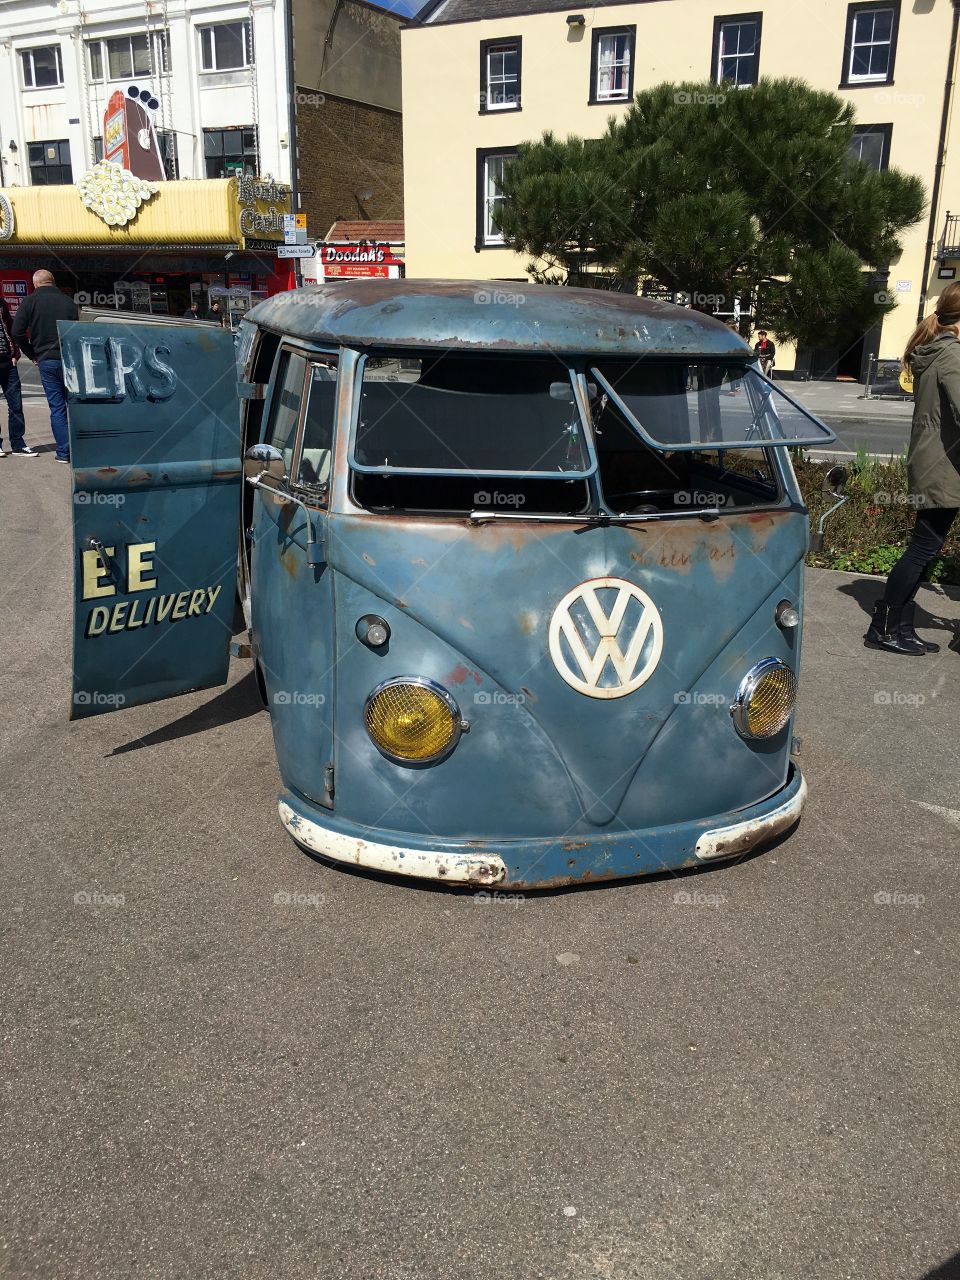 Rusty Volkswagen van 